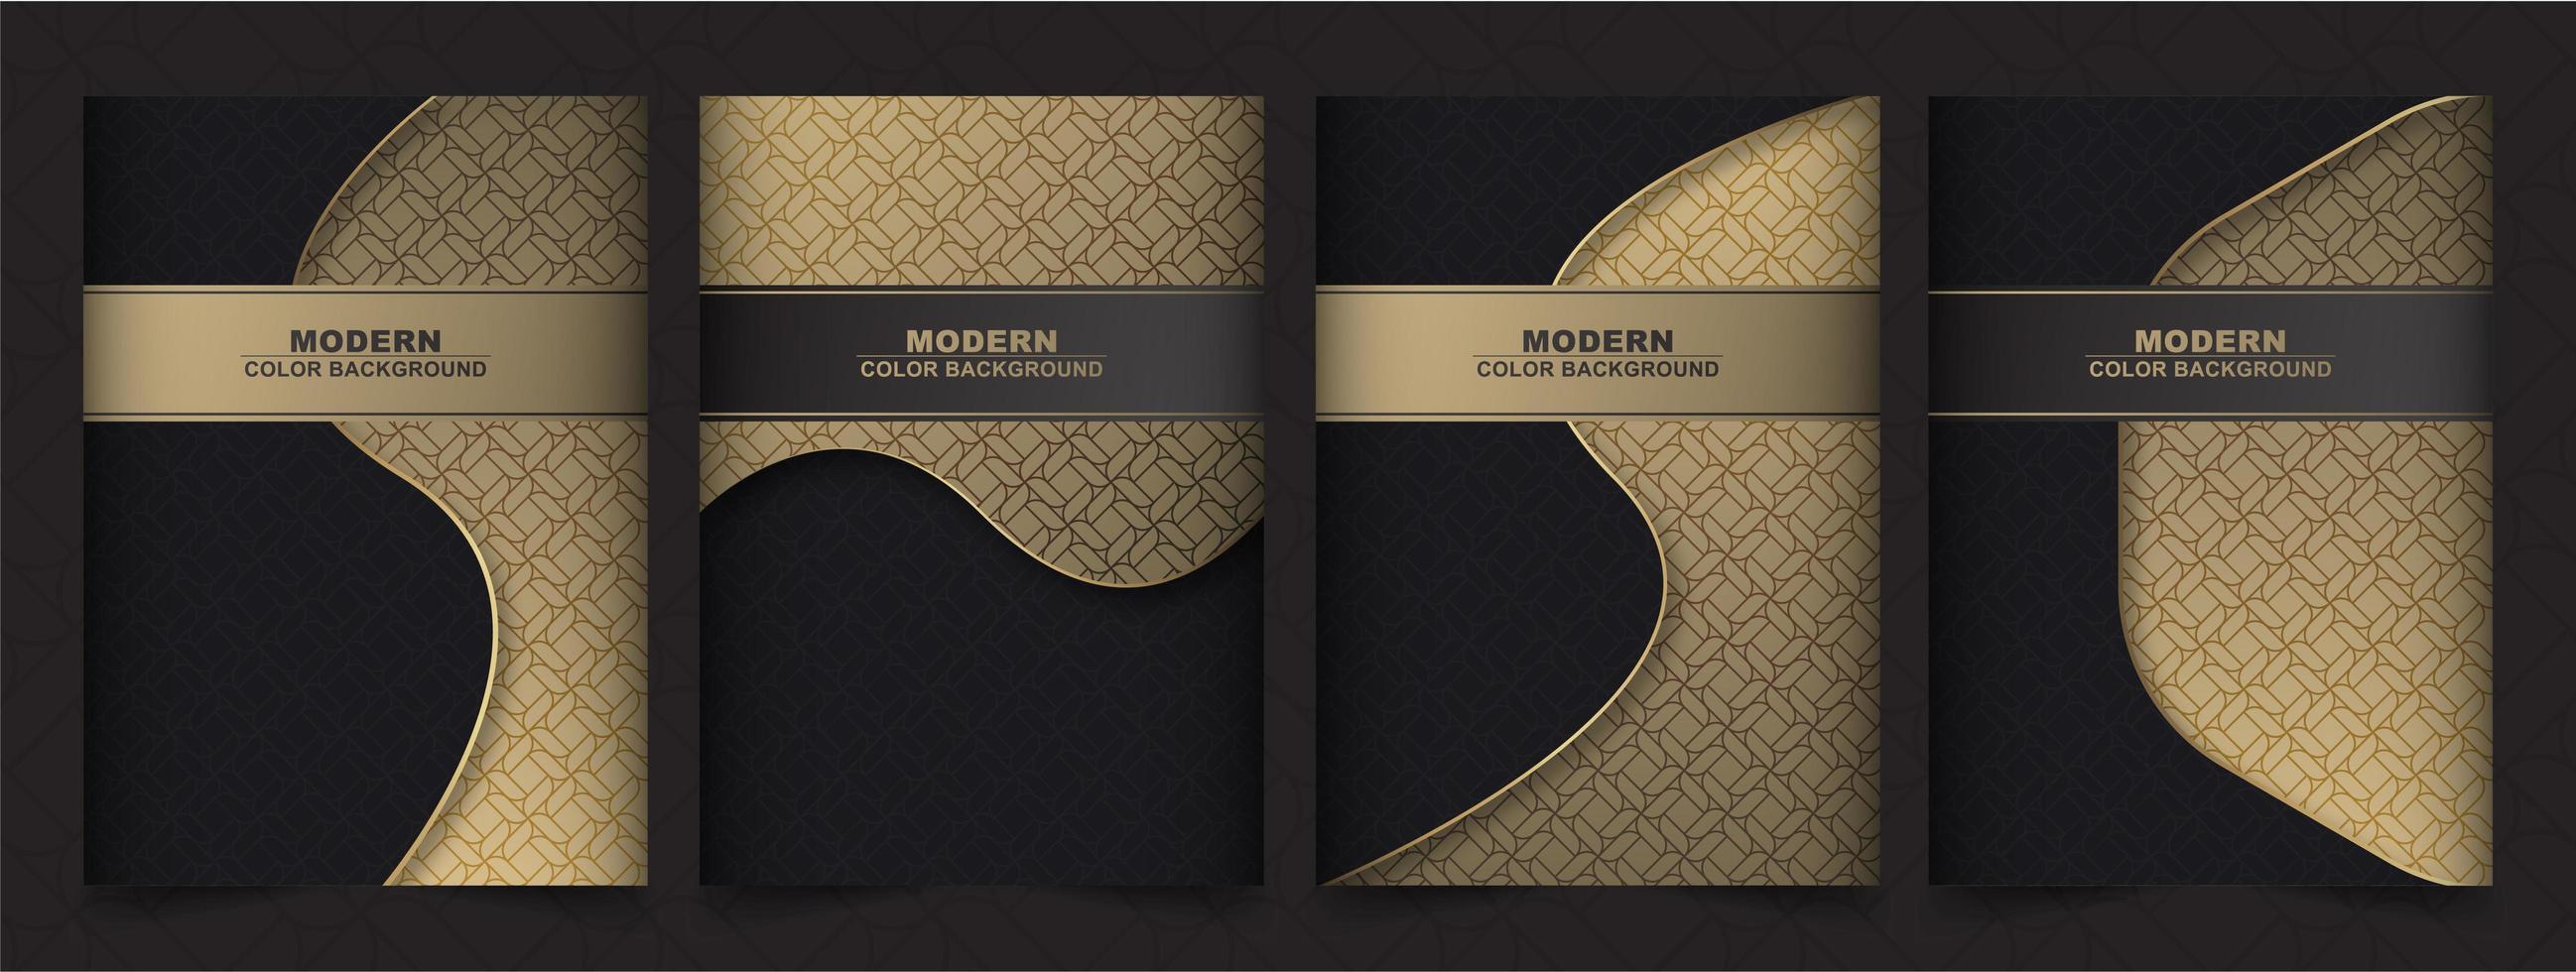 minimalistische Cover-Designs in Schwarz und Gold vektor